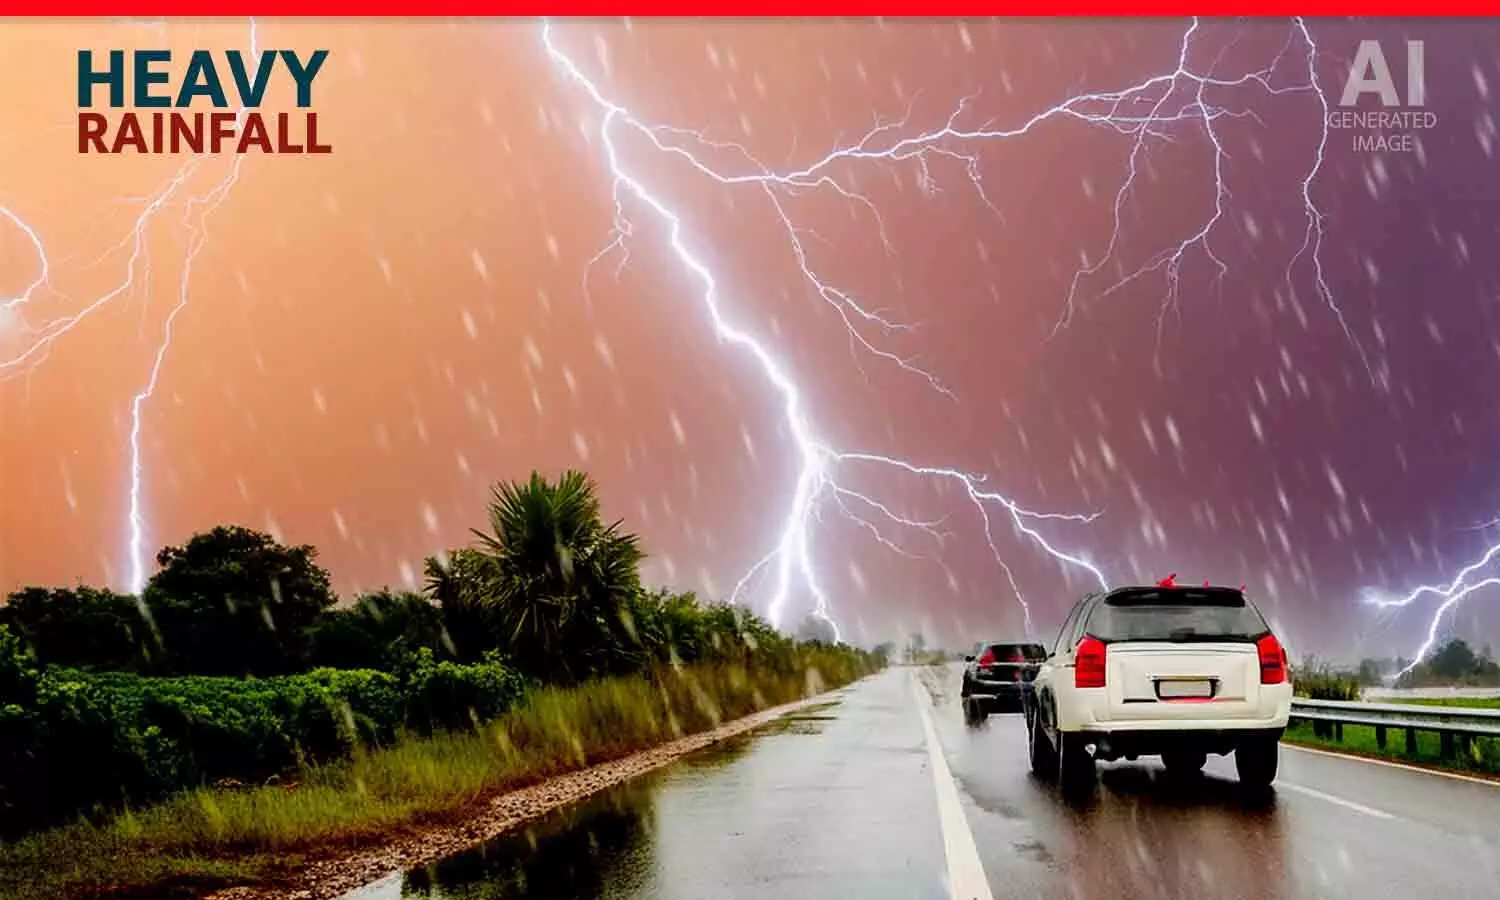 MP के 32 जिलों में बारिश का अलर्ट: उज्जैन में तेज बारिश, इंदौर में बिजली गिरने की संभावना; जानिए आपके यहां कैसा रहेगा मौसम